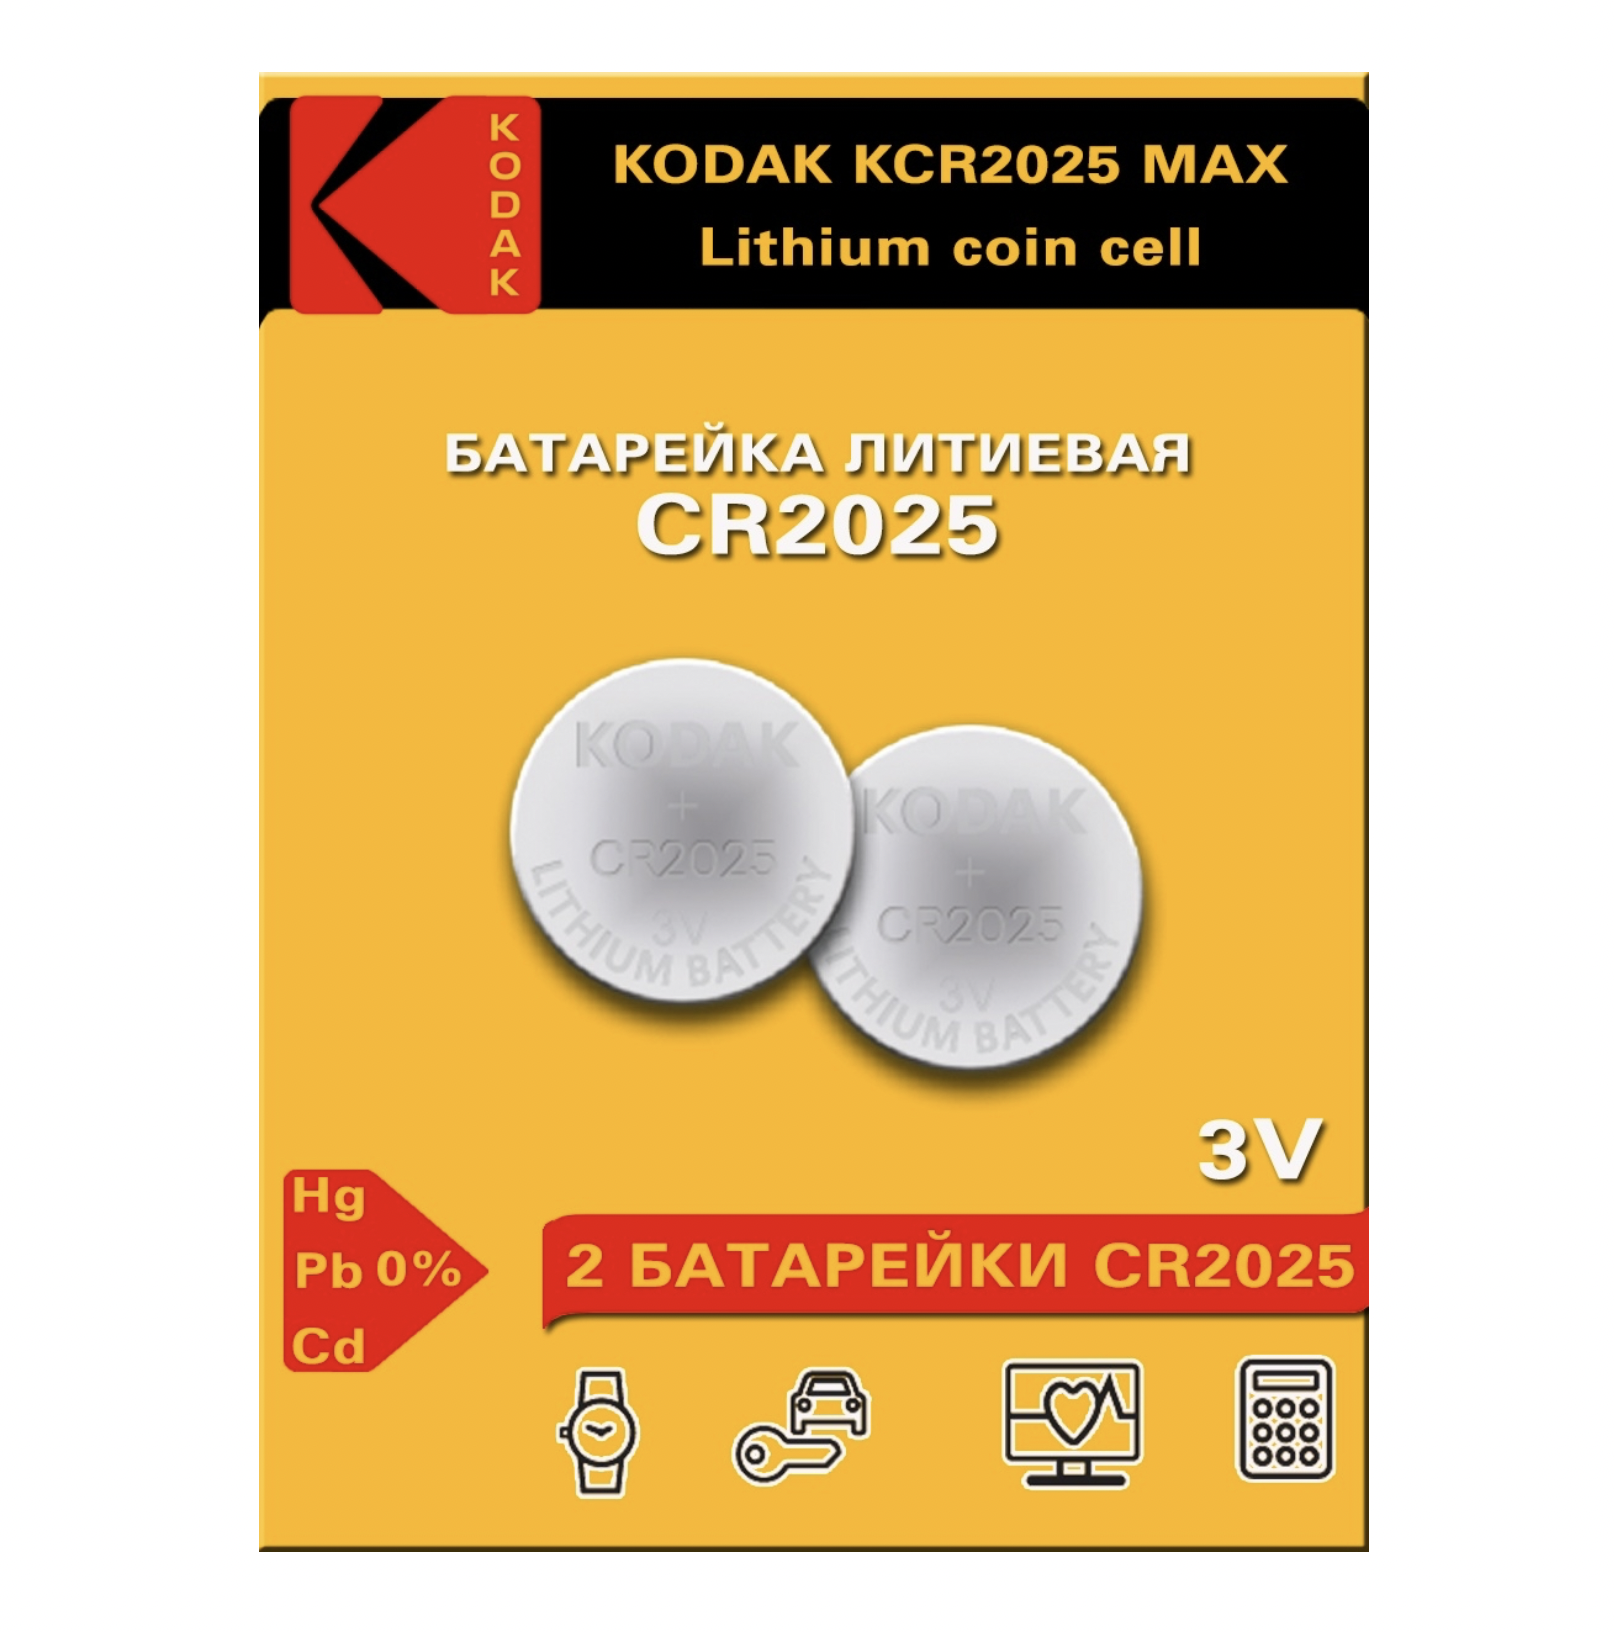   / Kodak -  Max Lithium CR2025 3V 2 